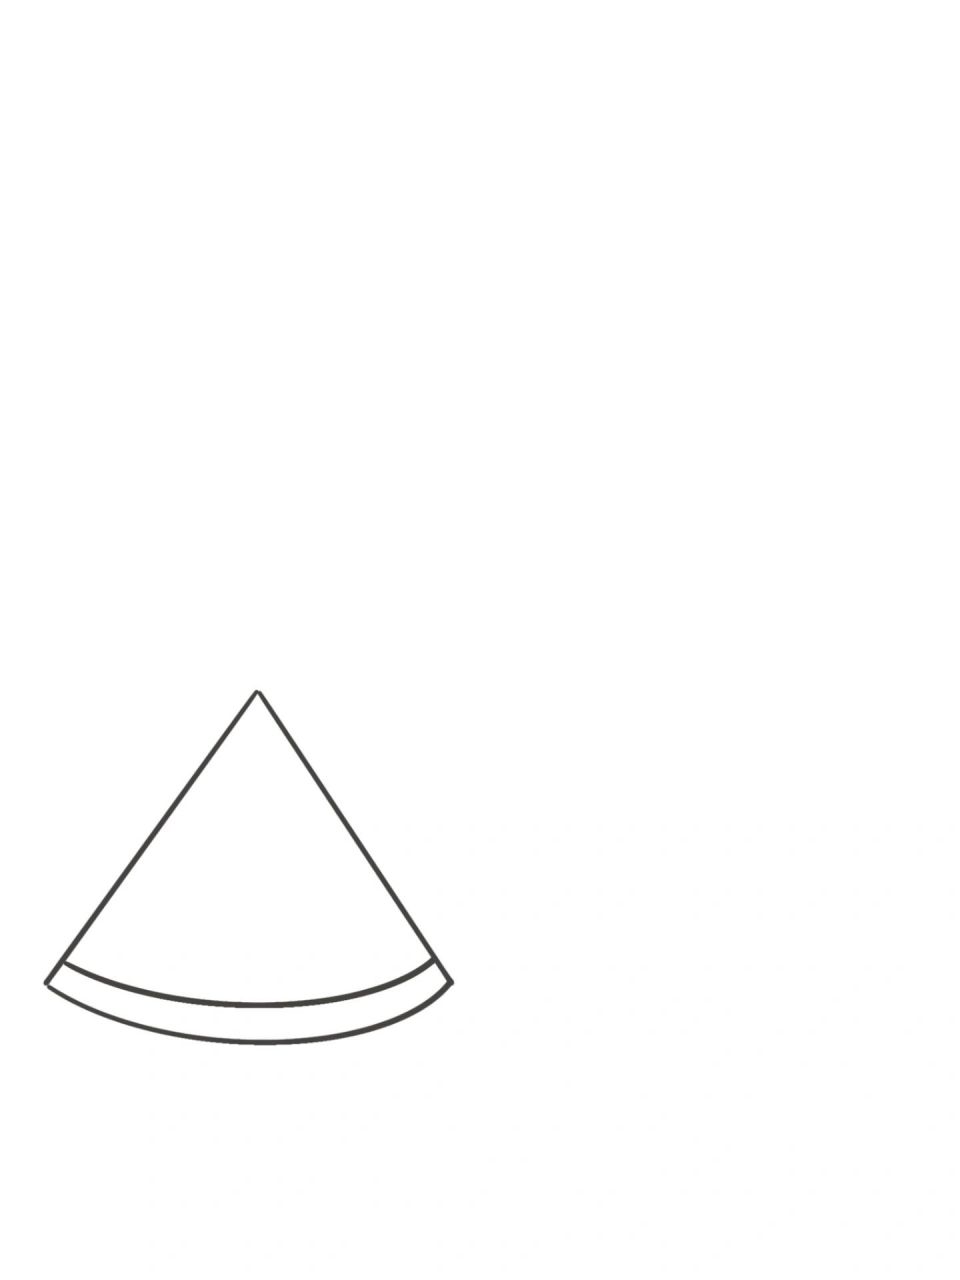 西瓜三角形简笔画图片